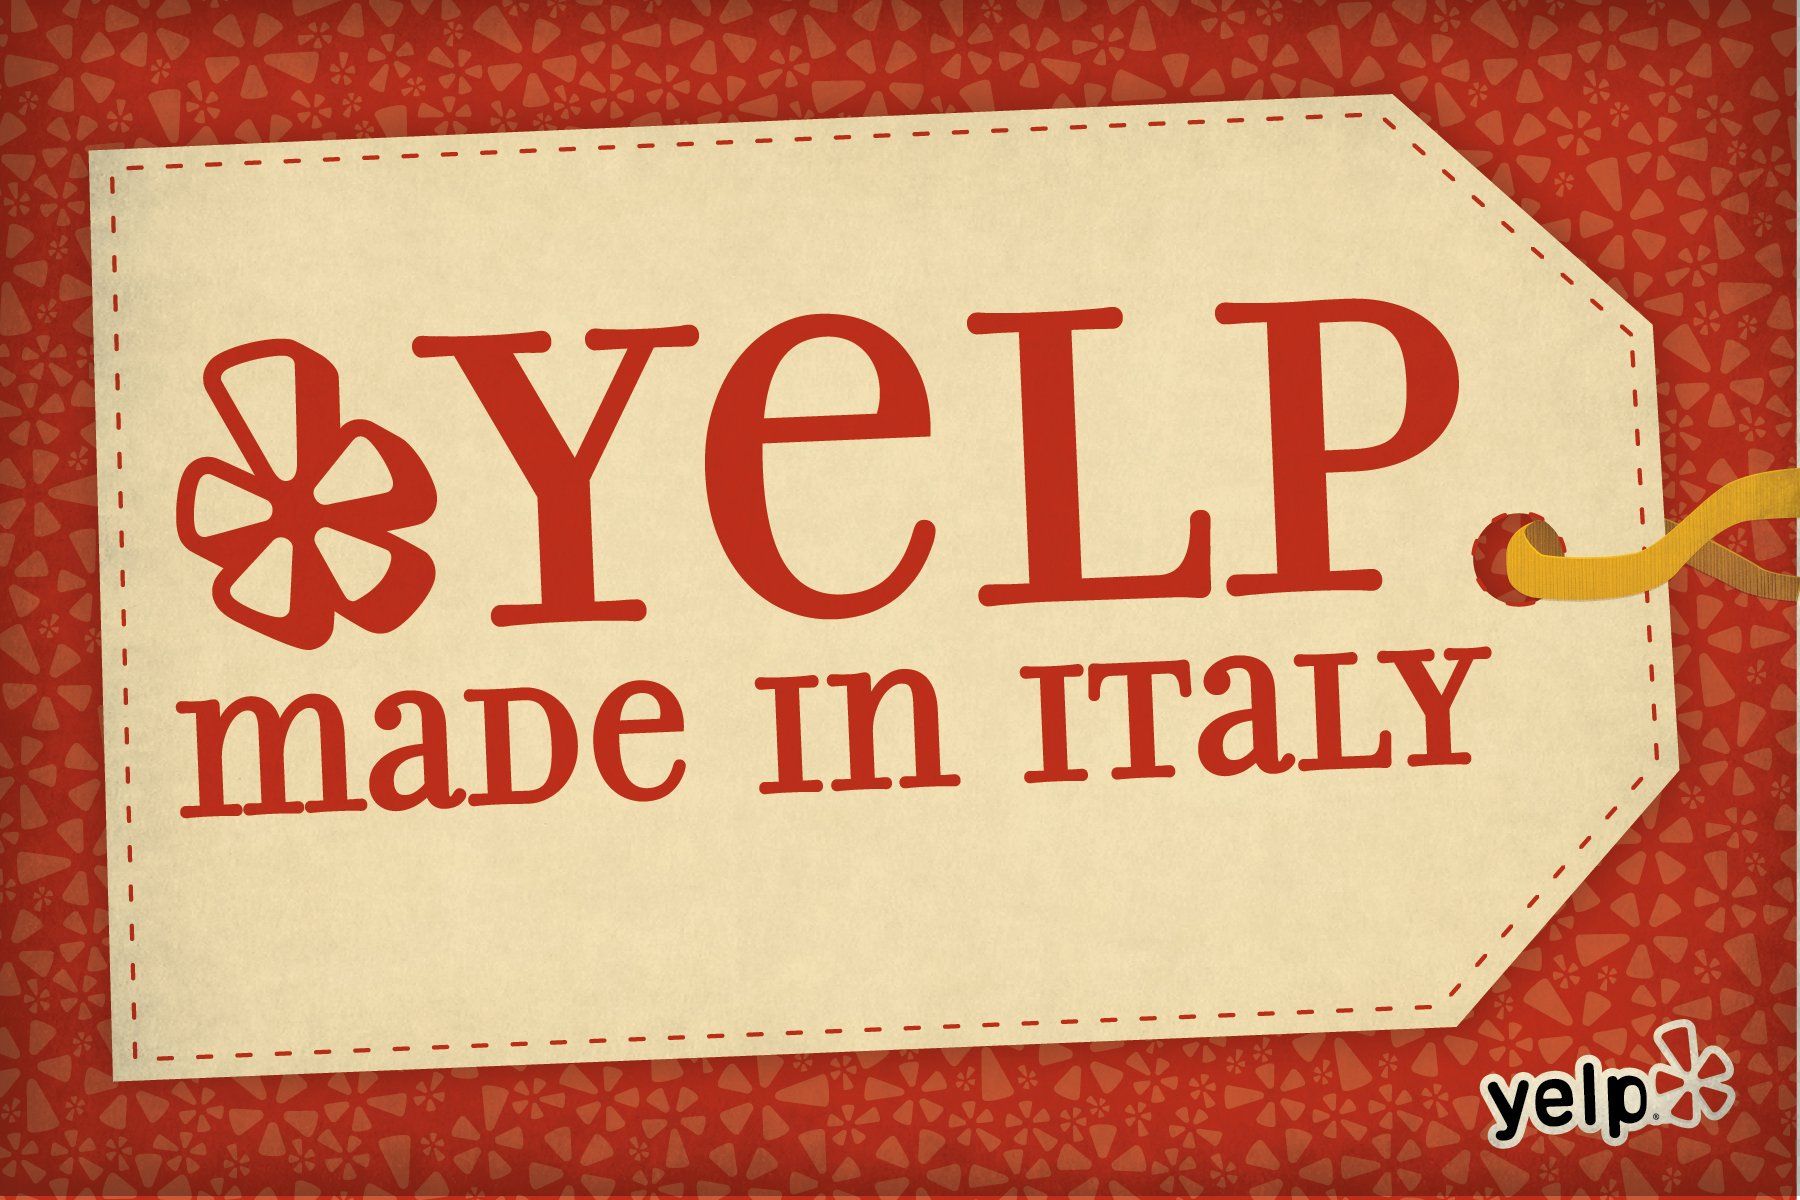 Yelp ♥ Made in Italy: a Natale fai un regalo artigianale e dai una mano alla piccola economia